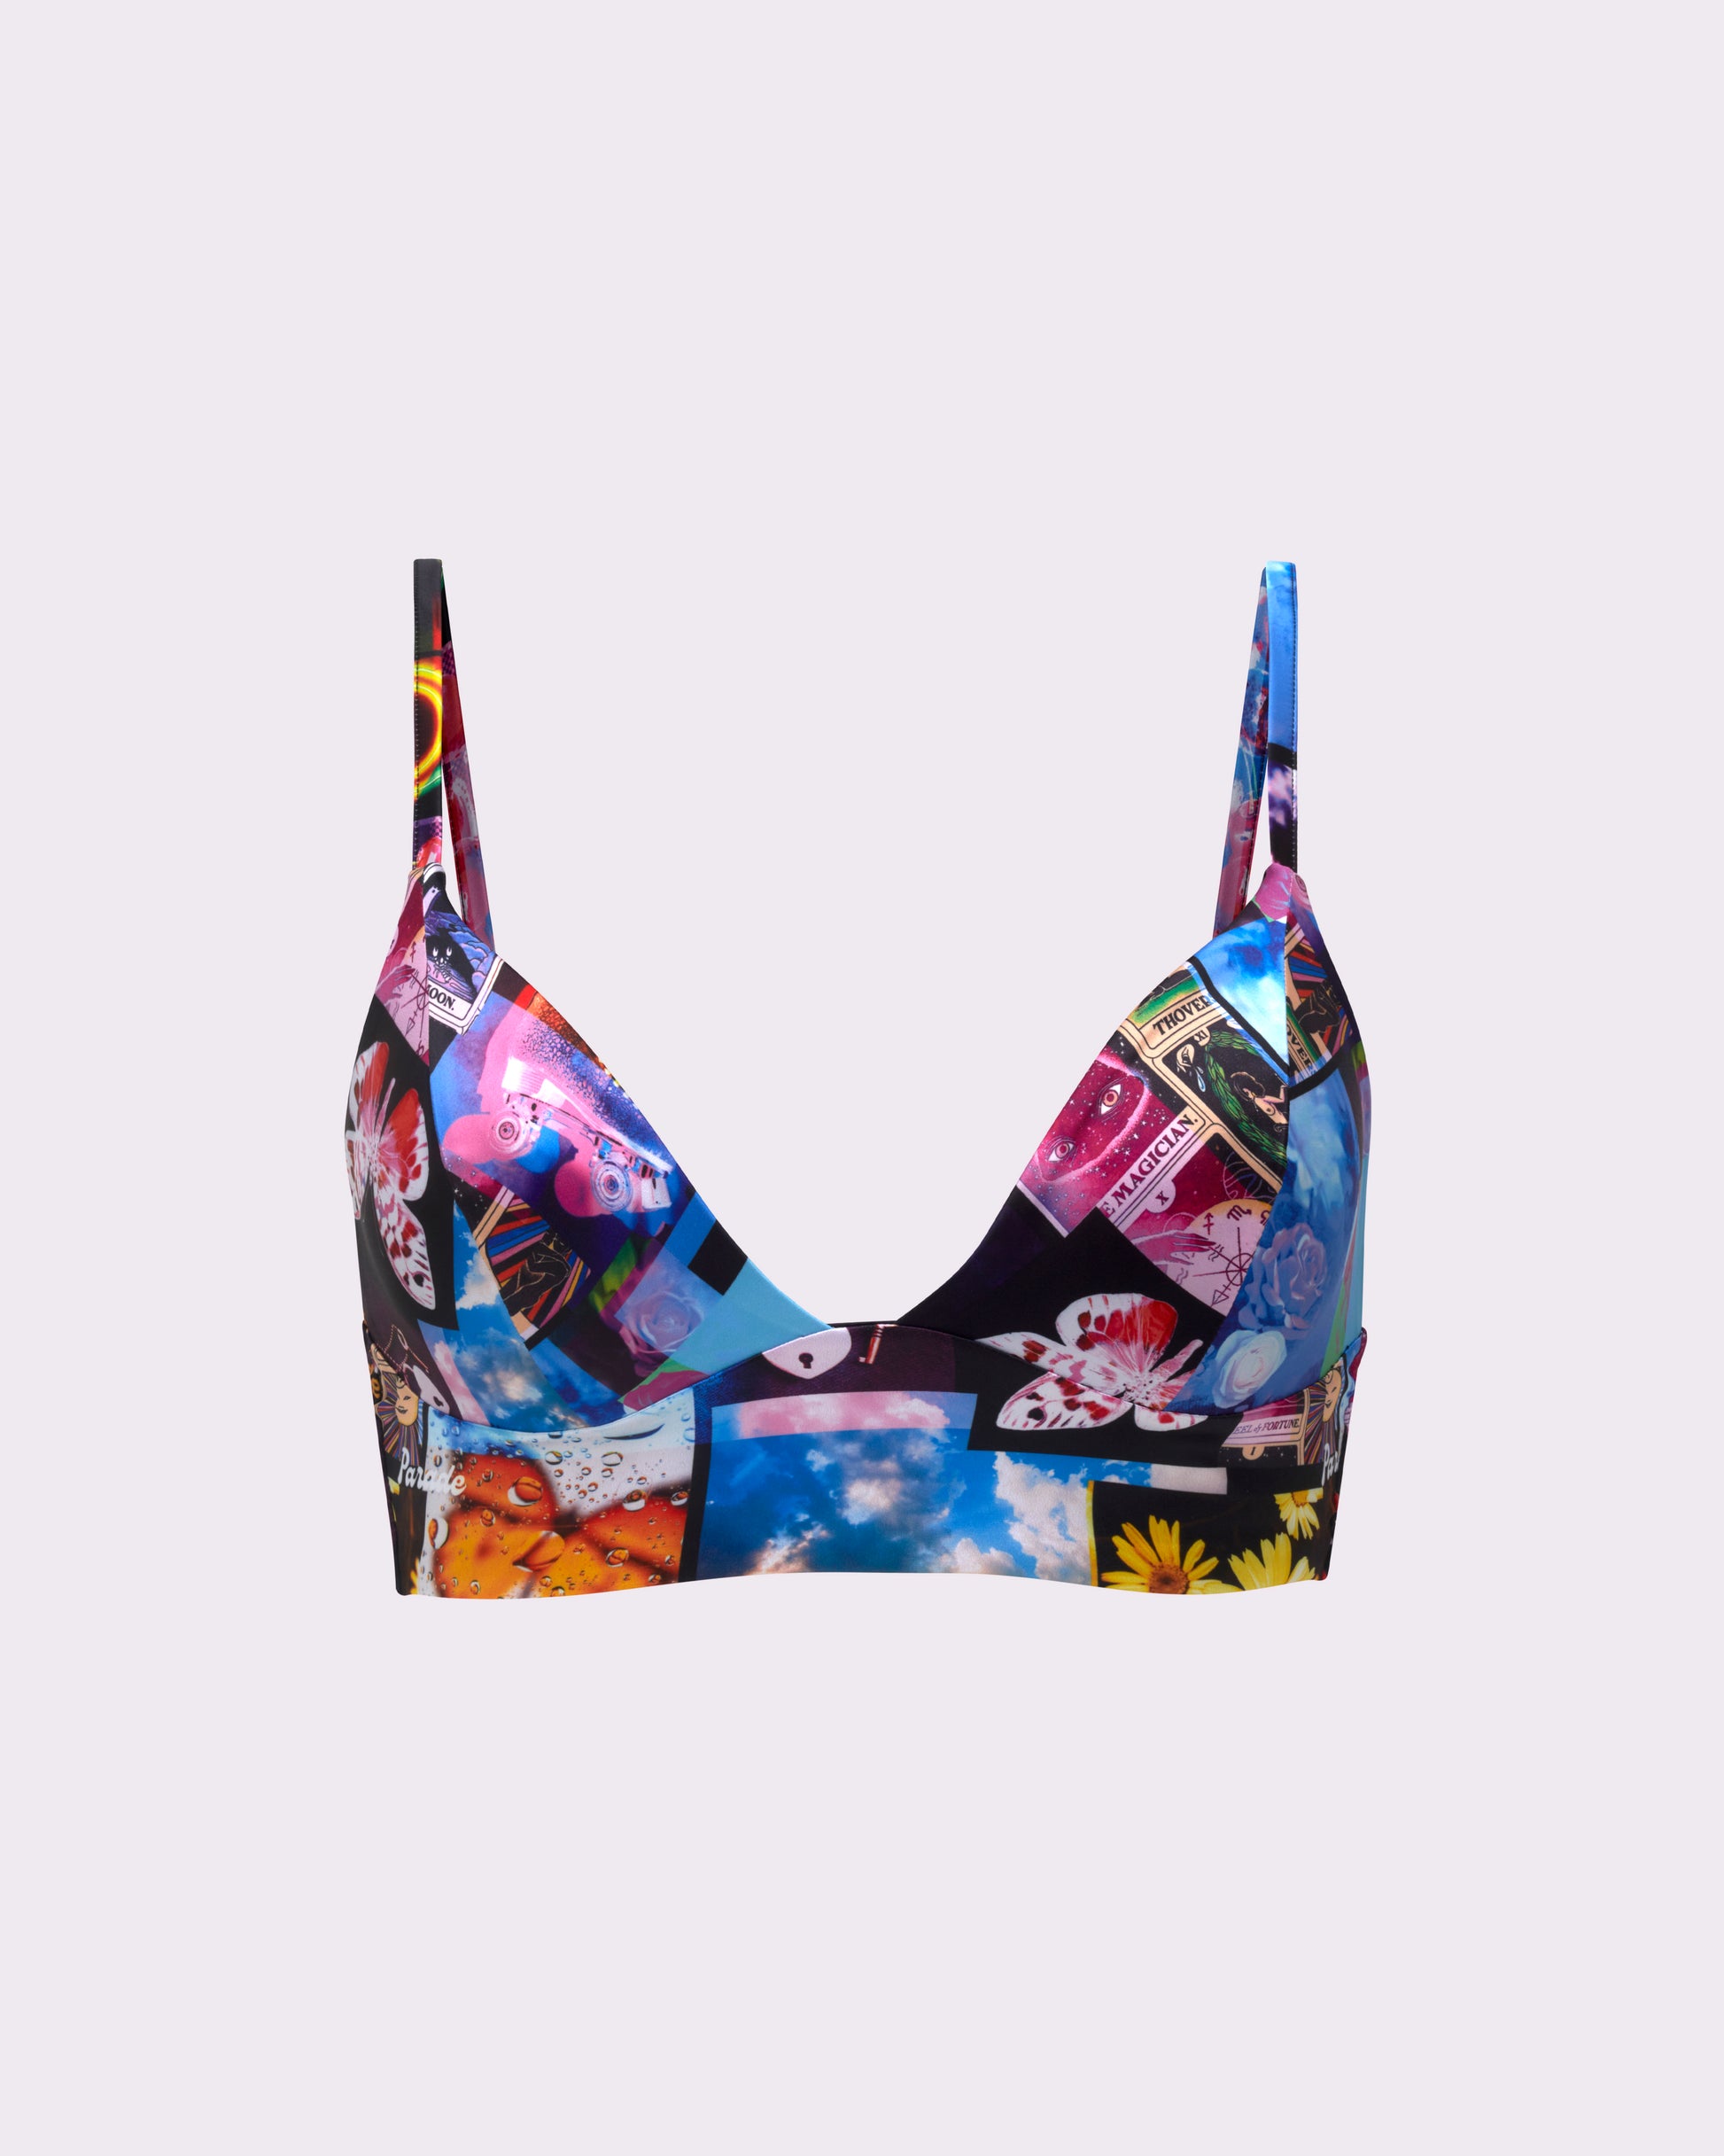 Mermaidens - Musings of a Modern Mermaid: DIY Vintage Yves Saint Laurent  Inspired Floral Bra